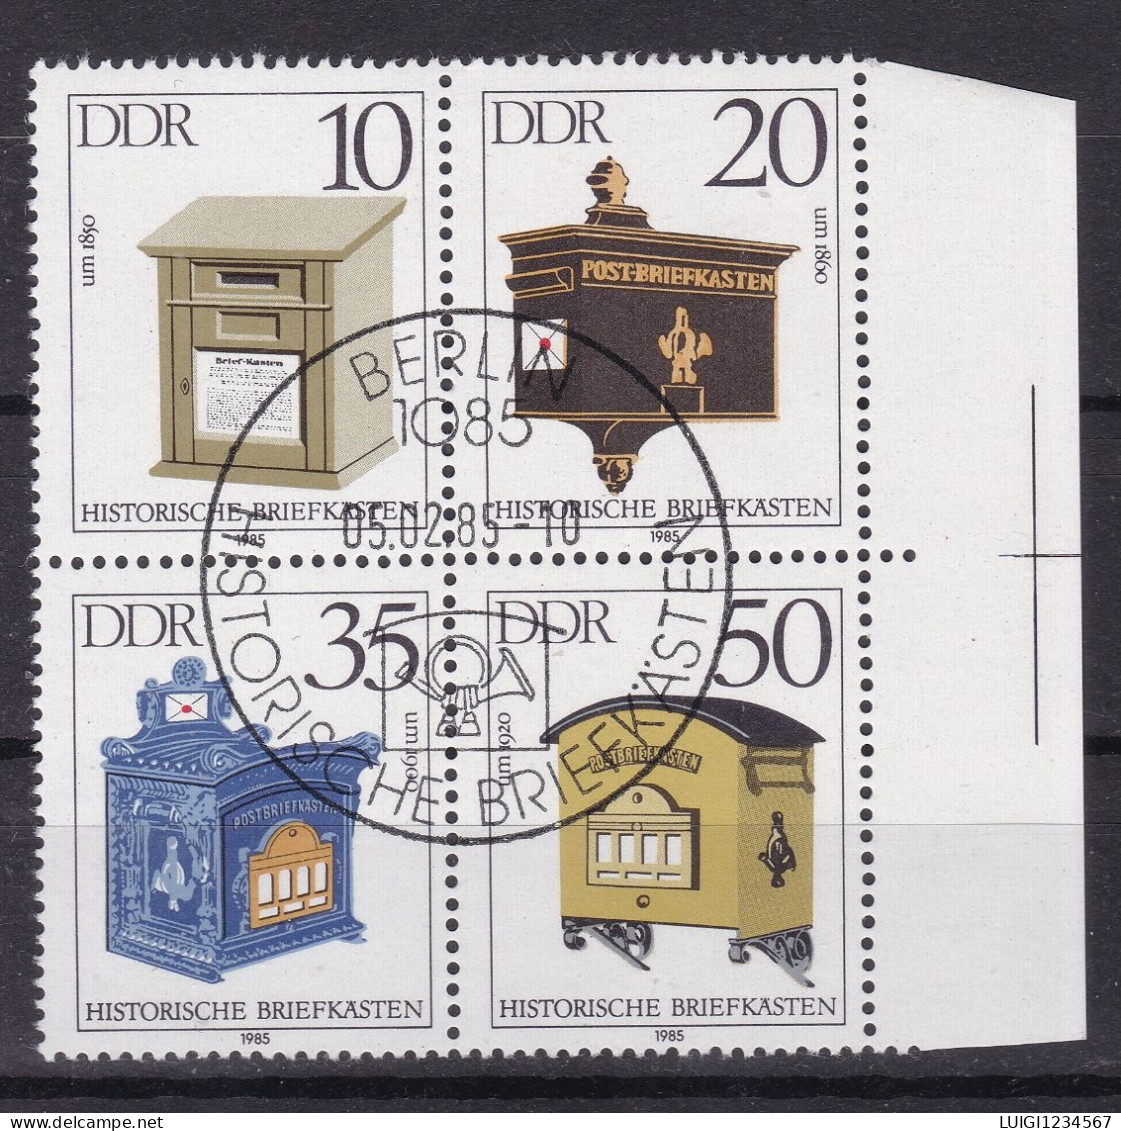 MICHEL NR 2924/2927 VIERERBLOCK - Used Stamps